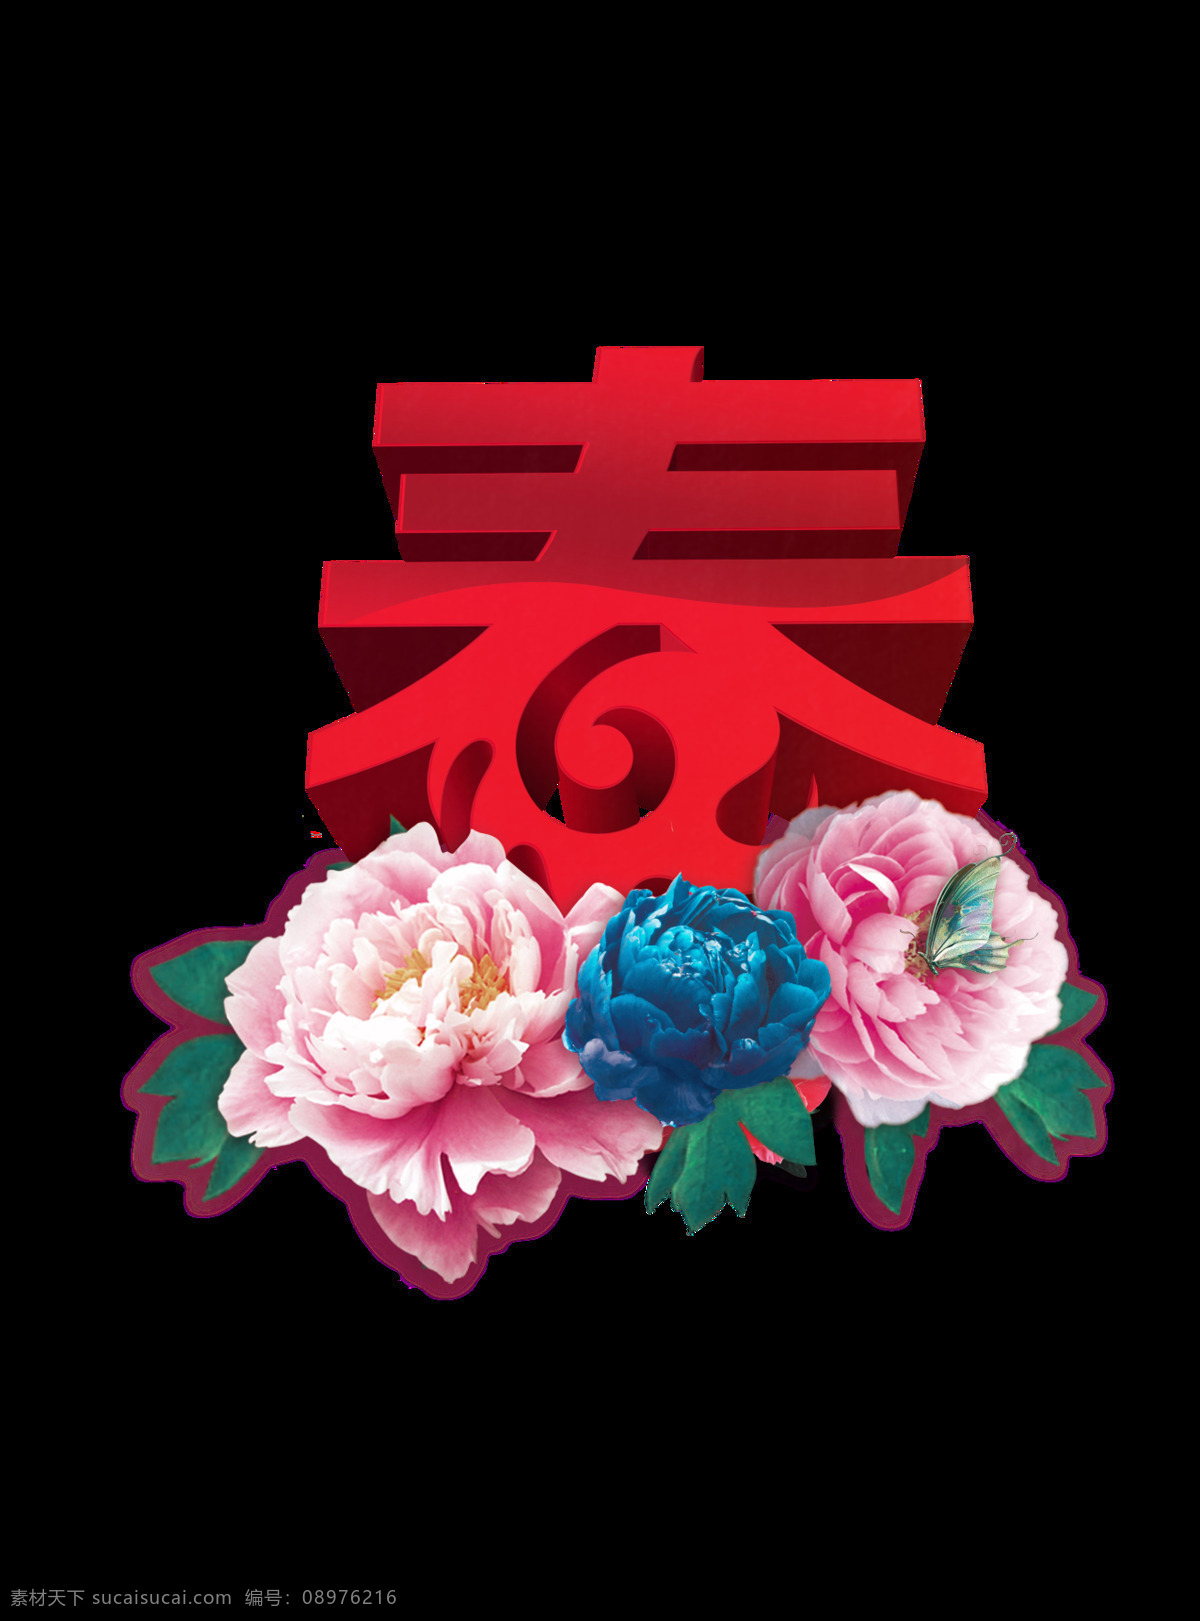 万紫千红 总是 春 元素 png元素 春节 节日 免抠元素 牡丹 透明素材 五颜六色 鲜花 新年